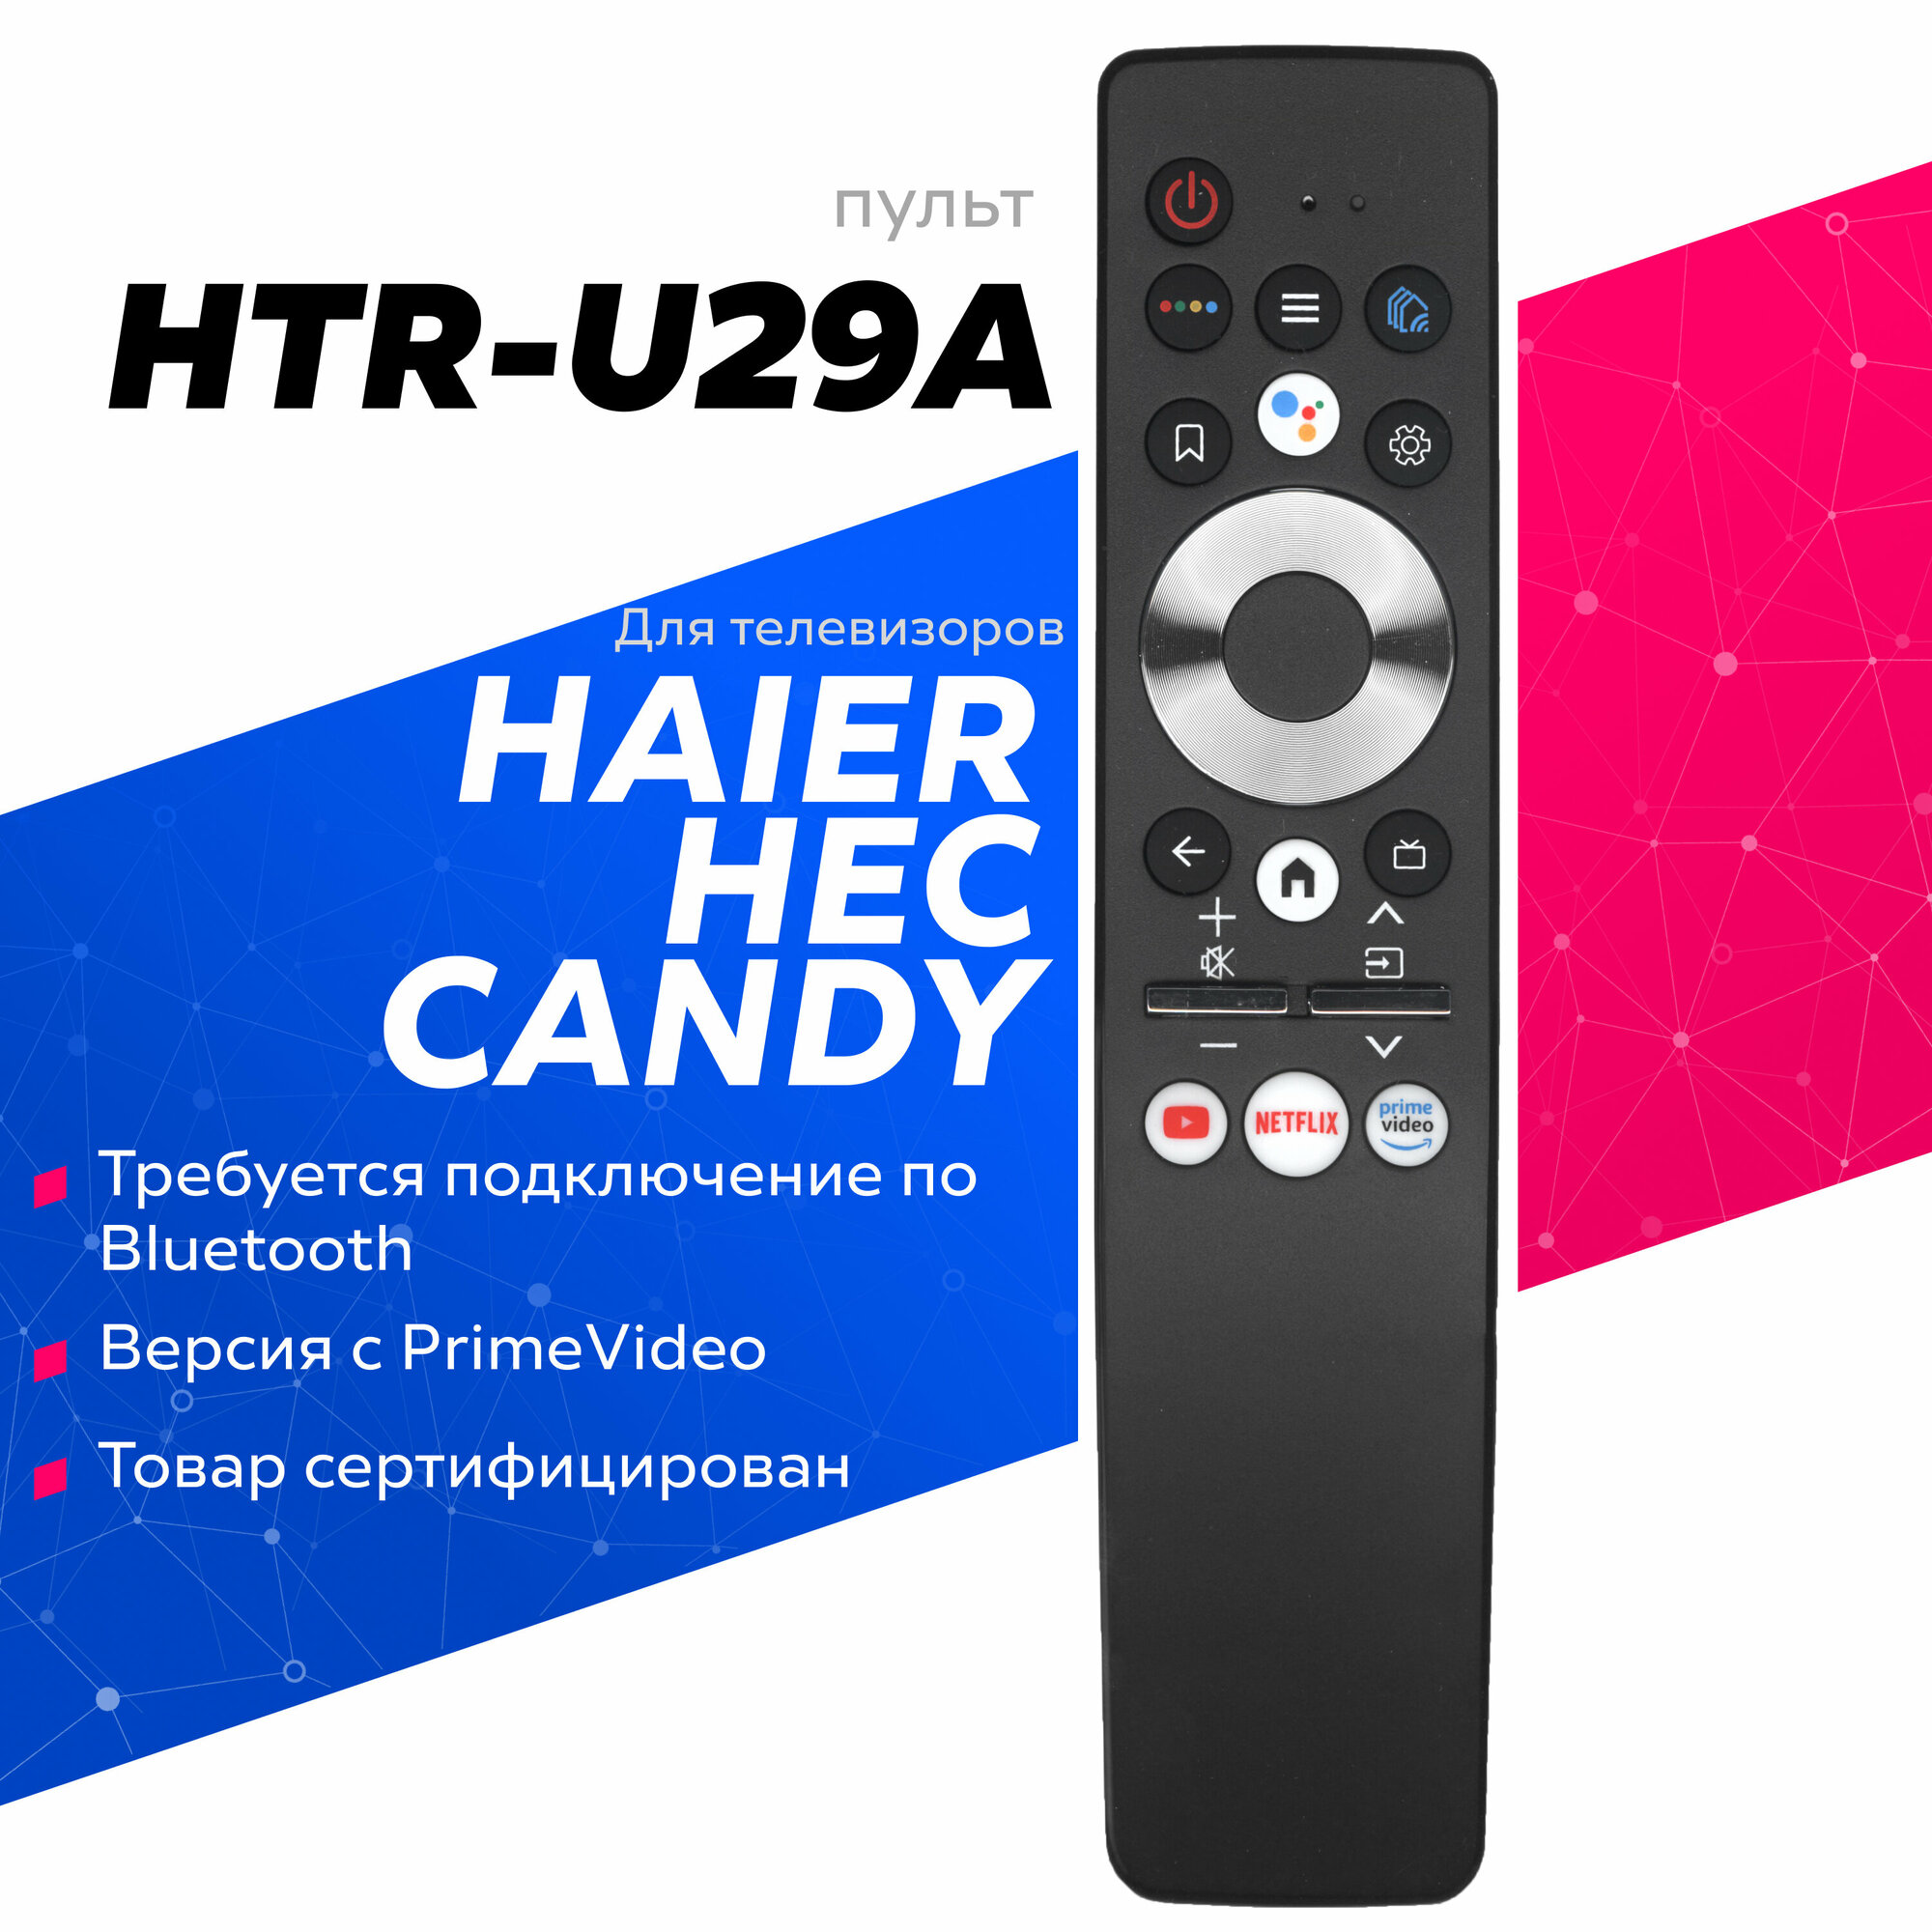 Пульт HE-V5(HTR-U29A) с голосовым управлением для телевизоров Haier HEC Candy